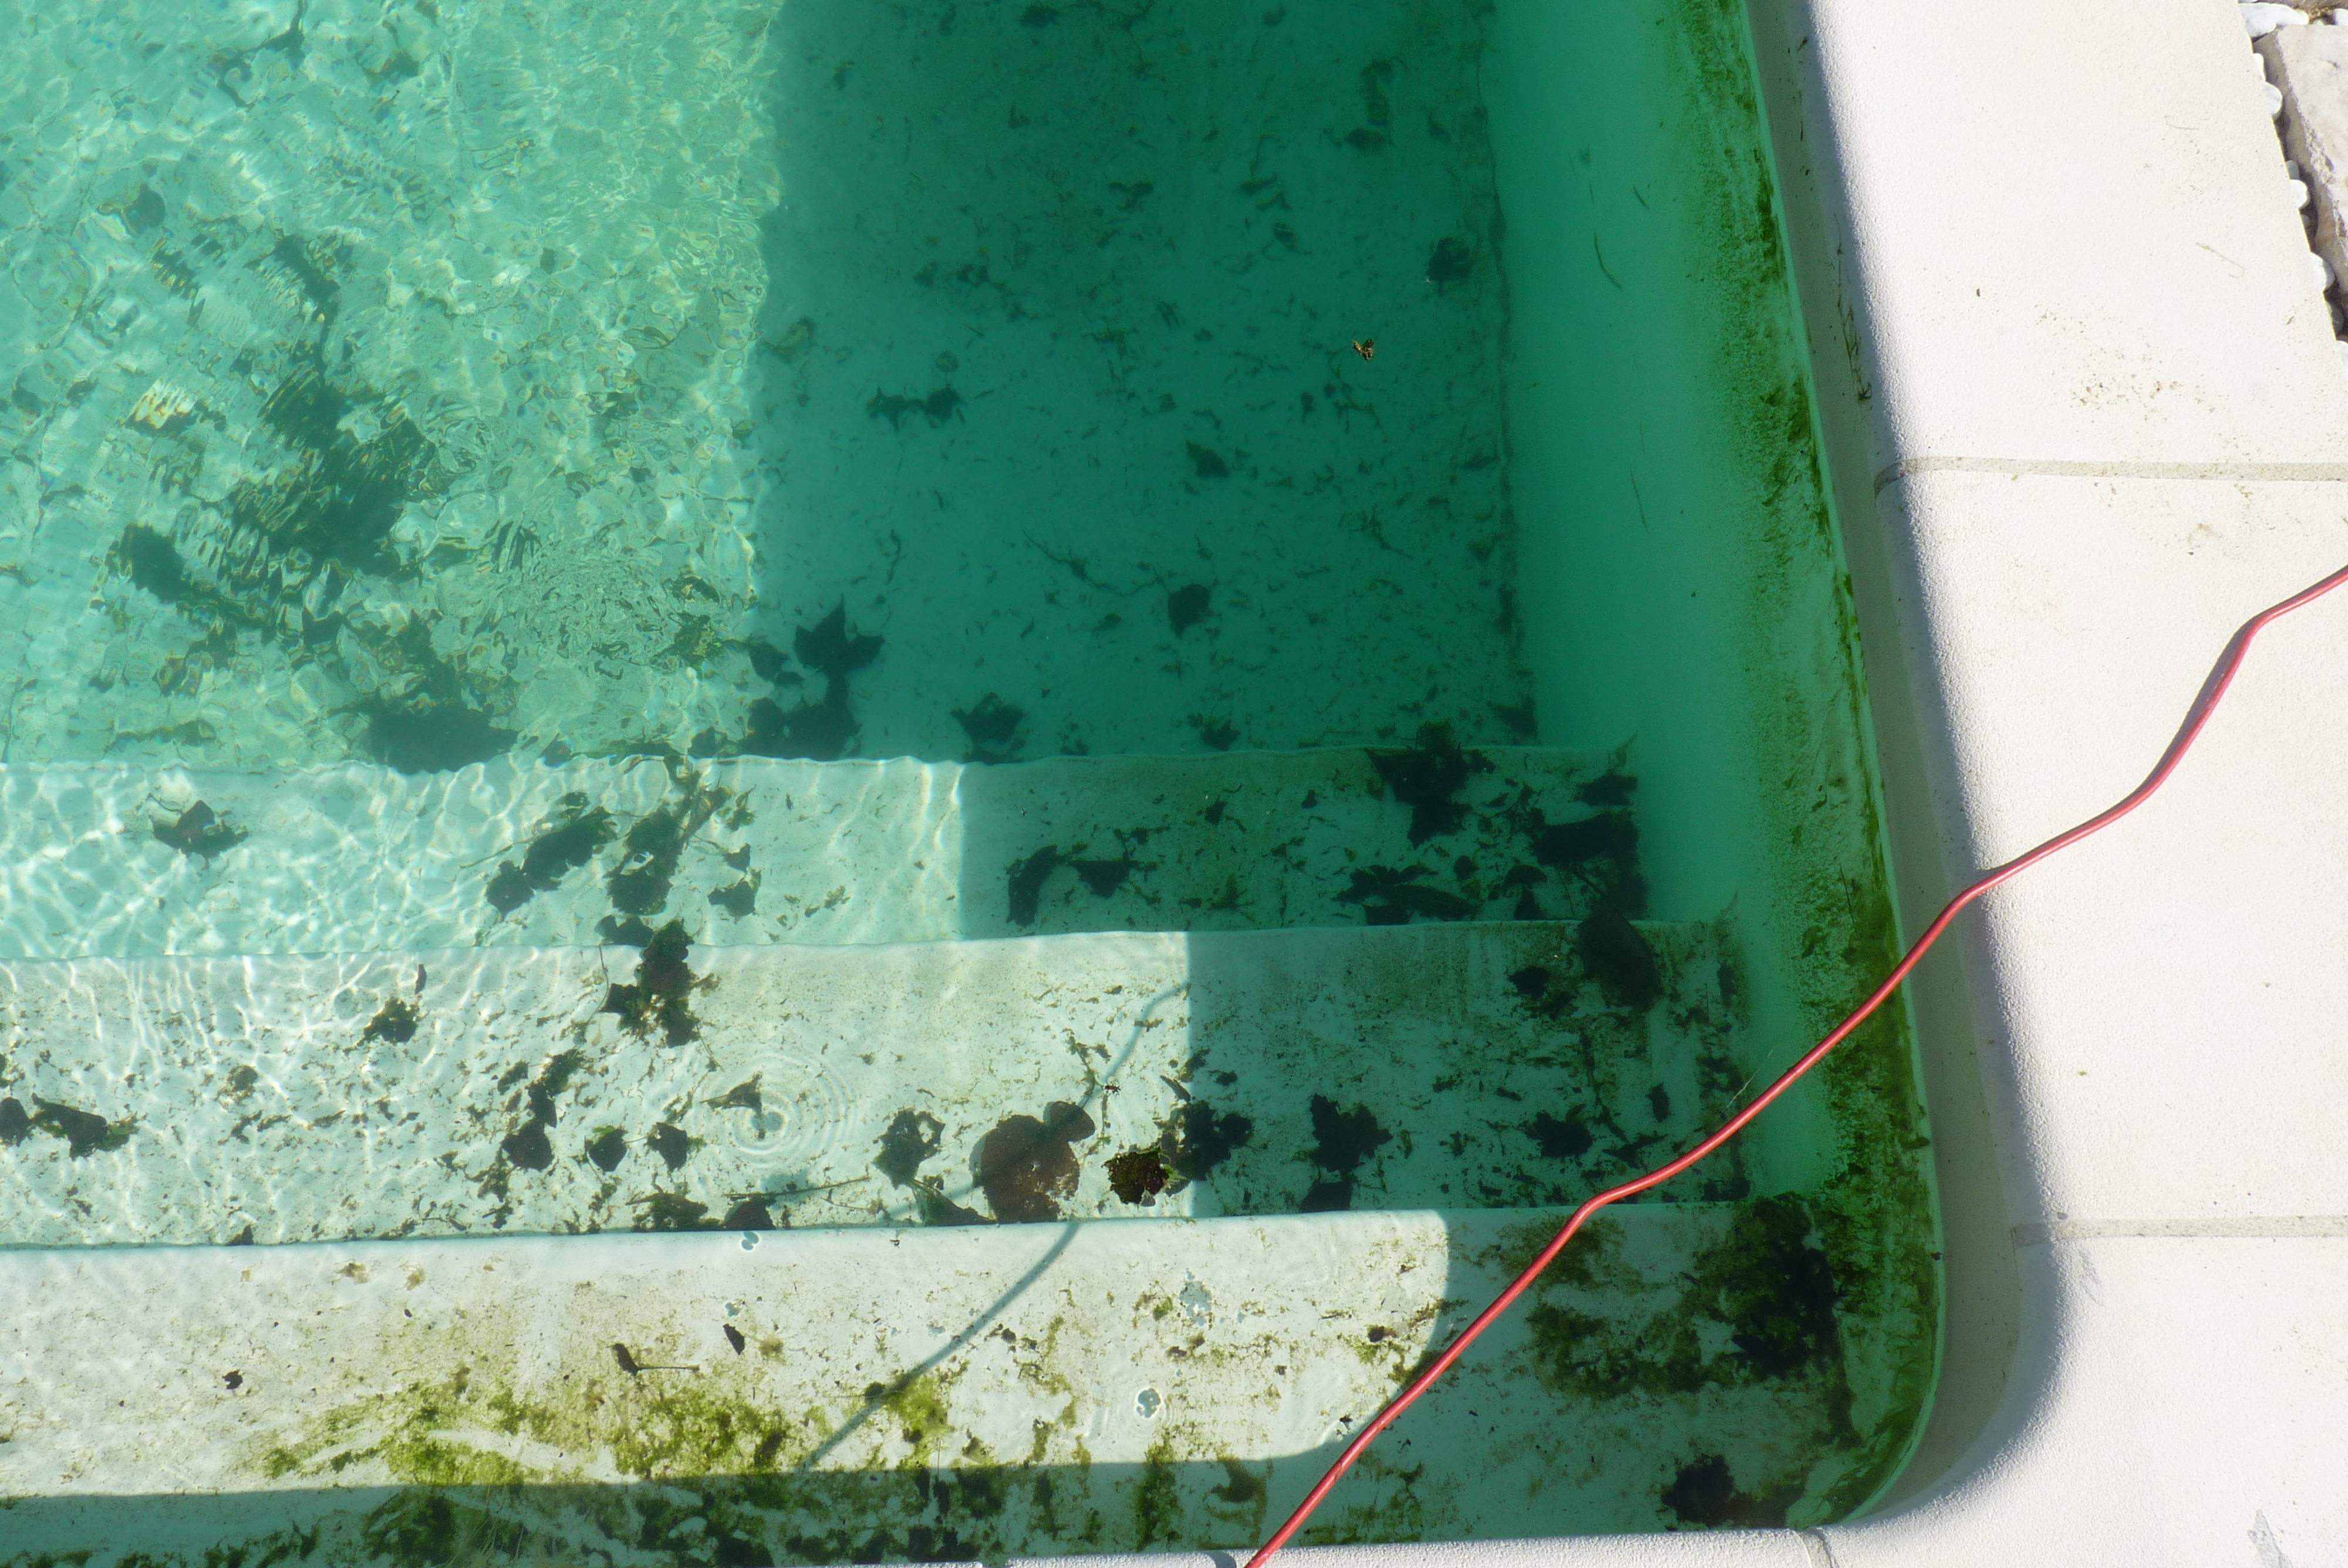 Entretenir sa piscine avec produit d'origine naturelle Biofloc-Plus réduit recours aux produits chimiques